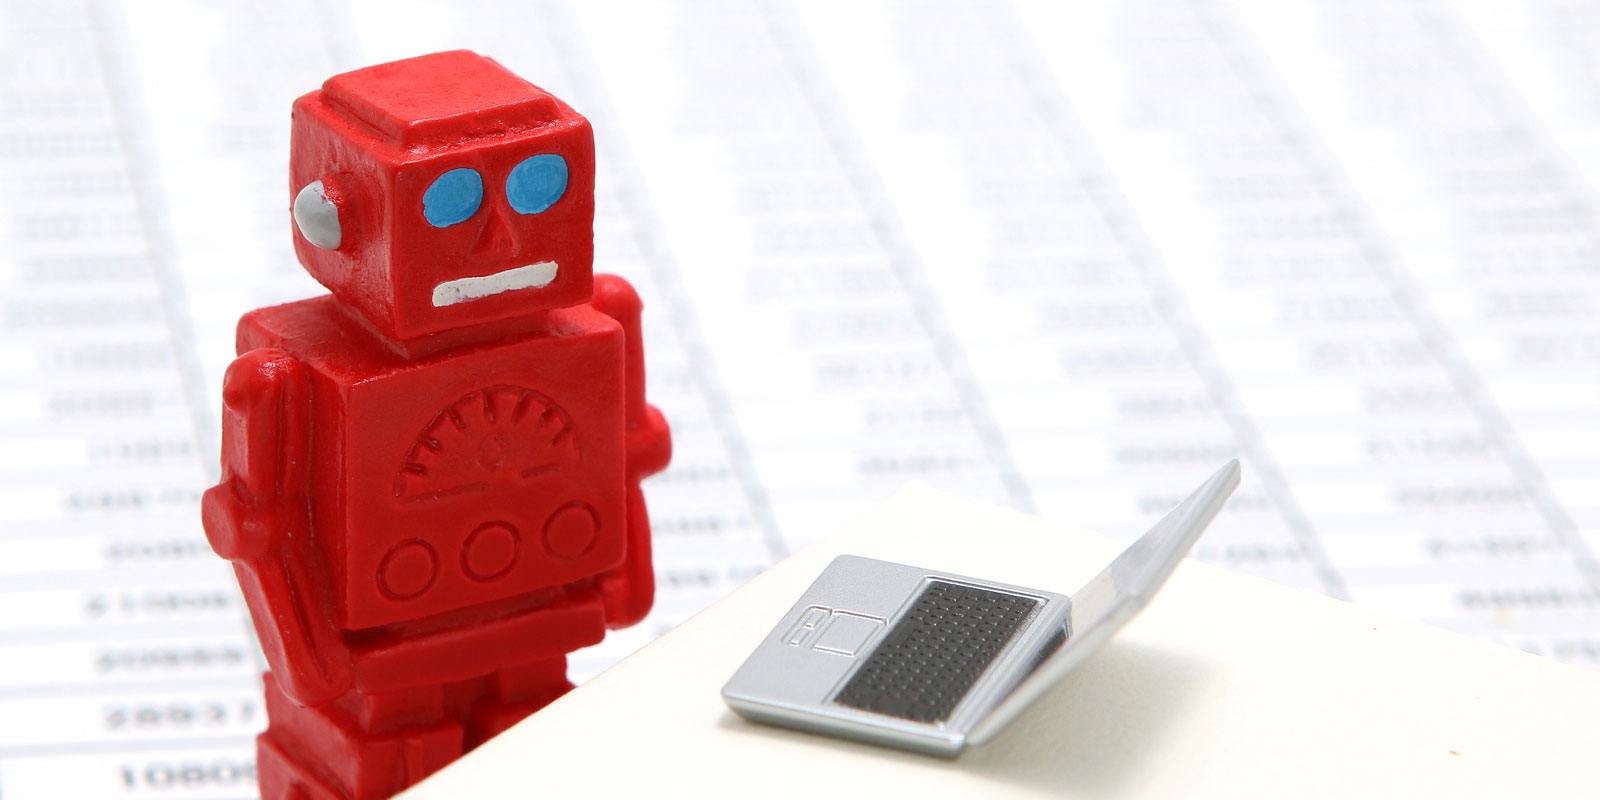 miniature red robot next to a tiny laptop